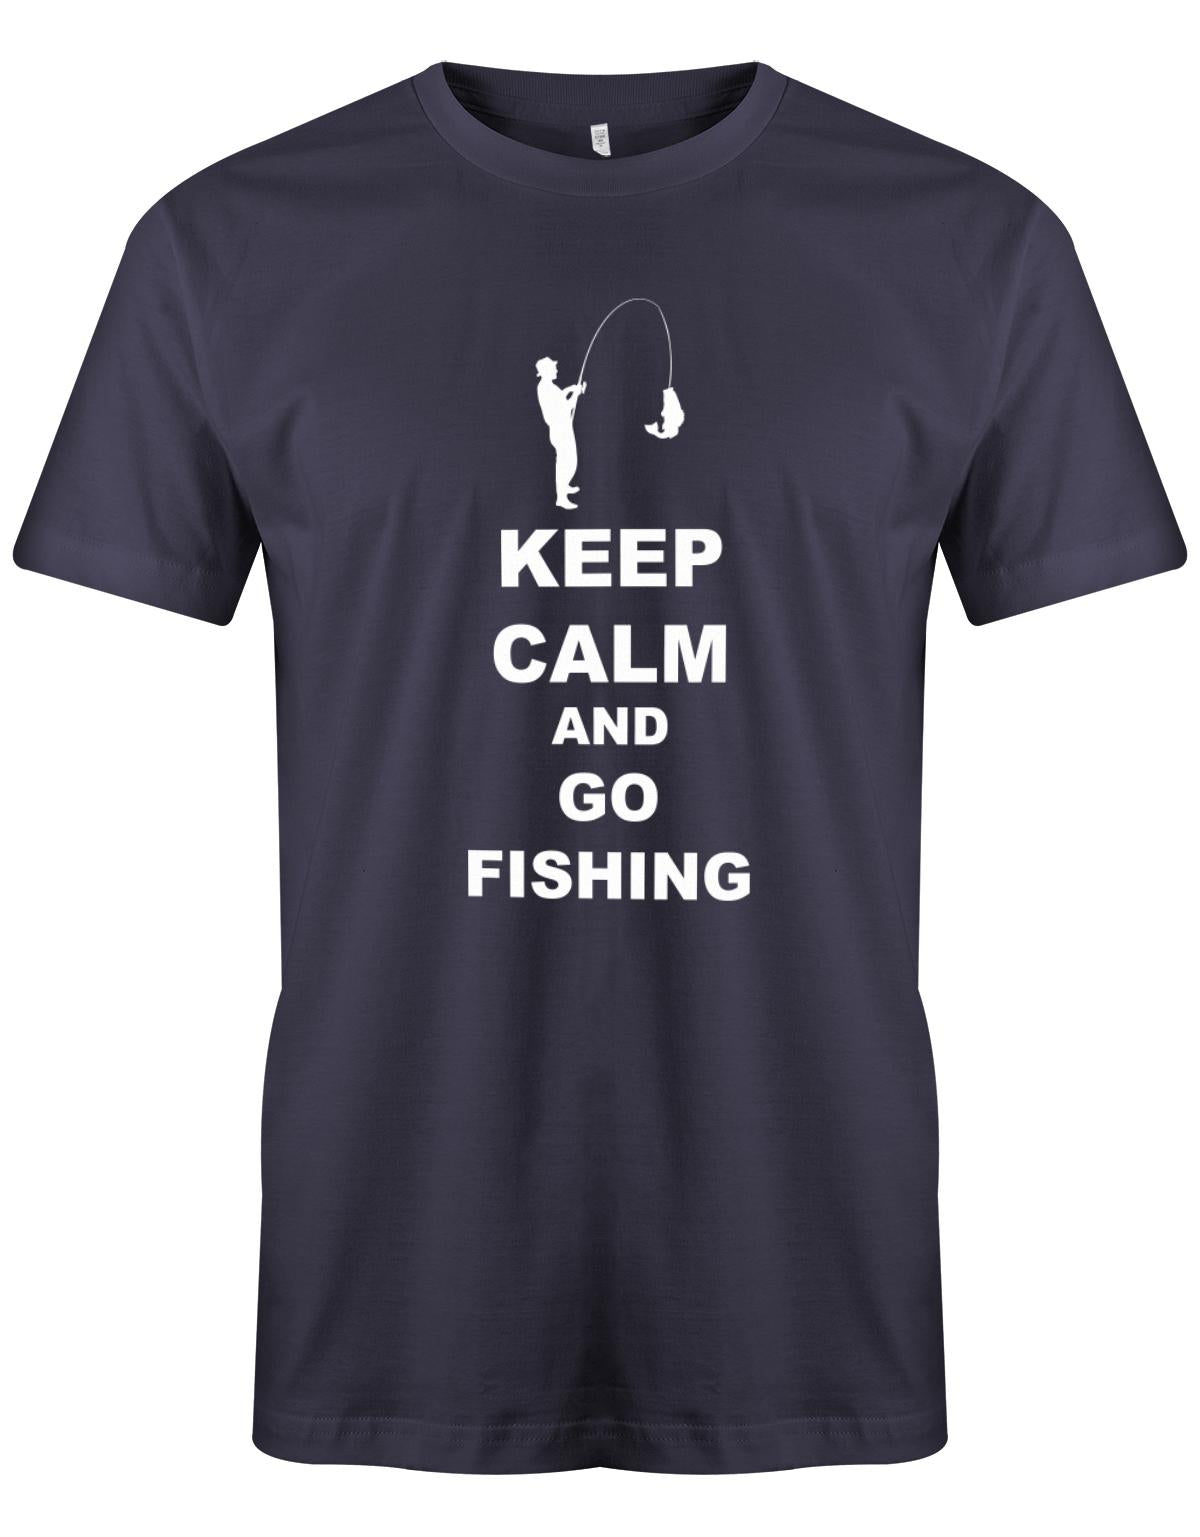 Keep-Calm-and-go-Fishing-herren-Shirt-Navy